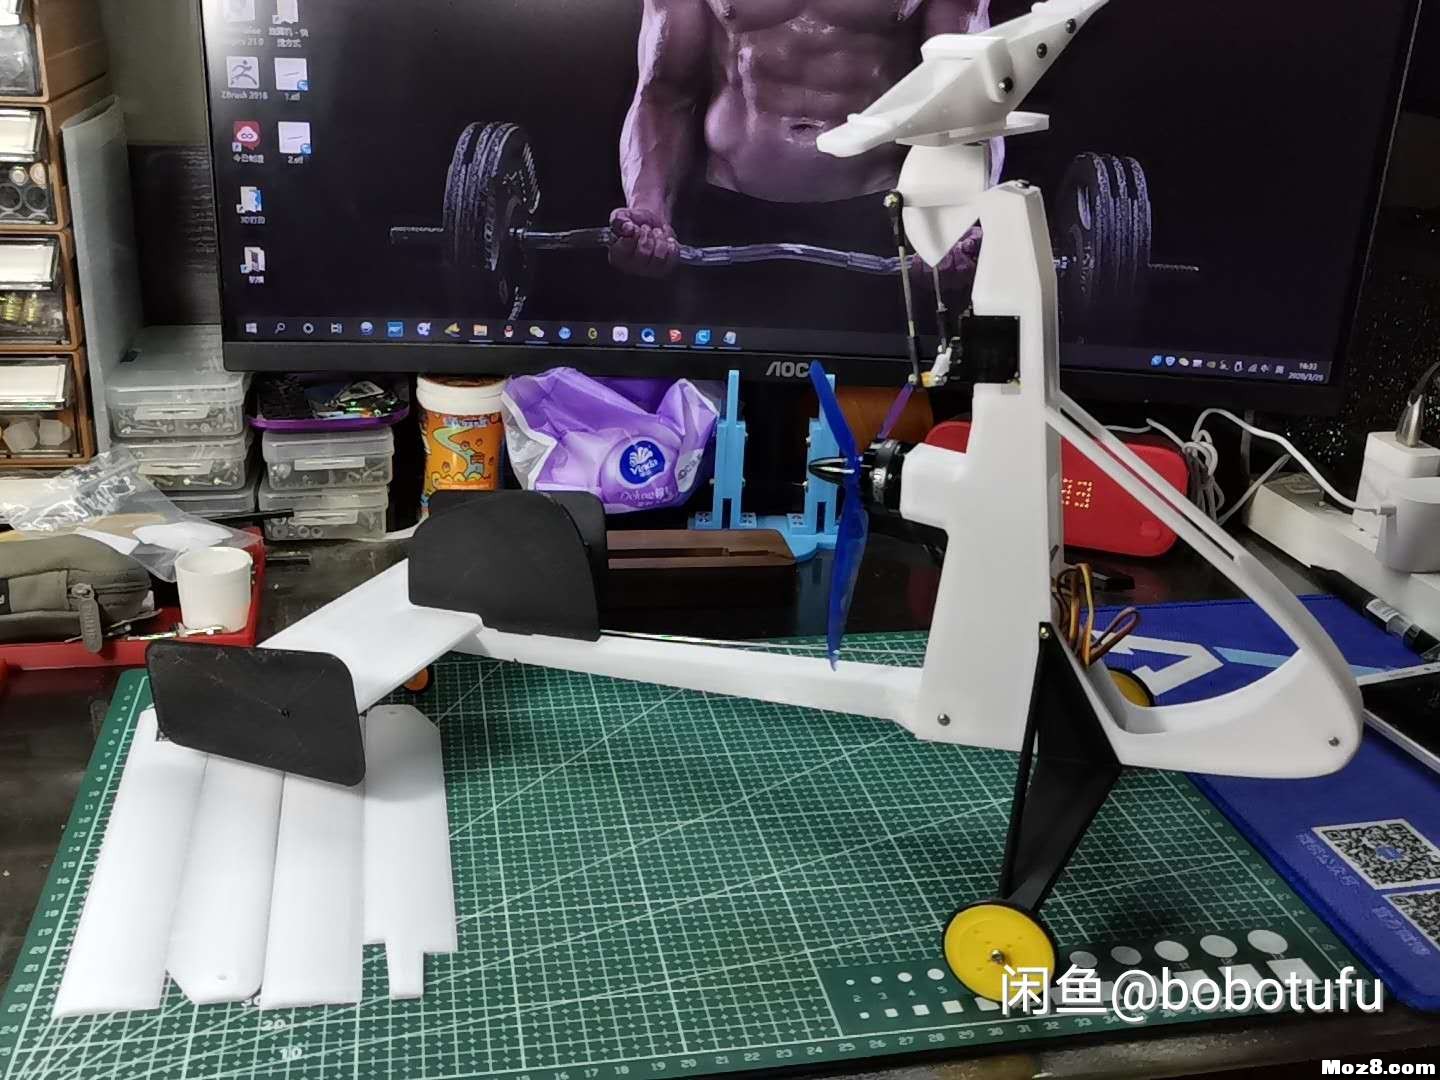 3D打印遥控旋翼机 电池,舵机,飞控,电调,电机 作者:bobotufu 6648 